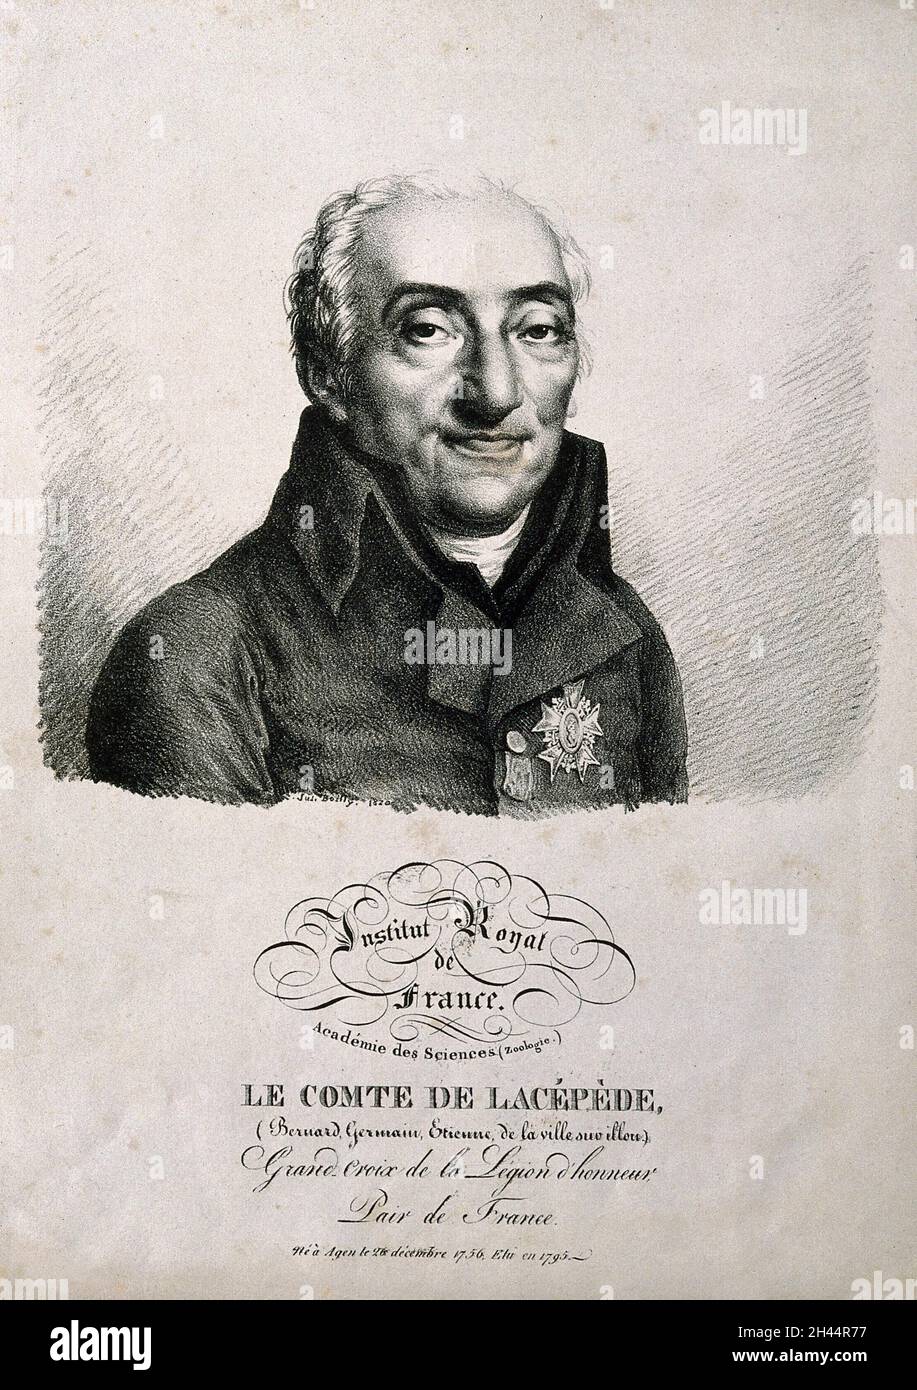 Bernard Germain Étienne de la Ville-sur-Illon, Comte de Lacépède. Lithographie von J. Boilly, 1820. Stockfoto